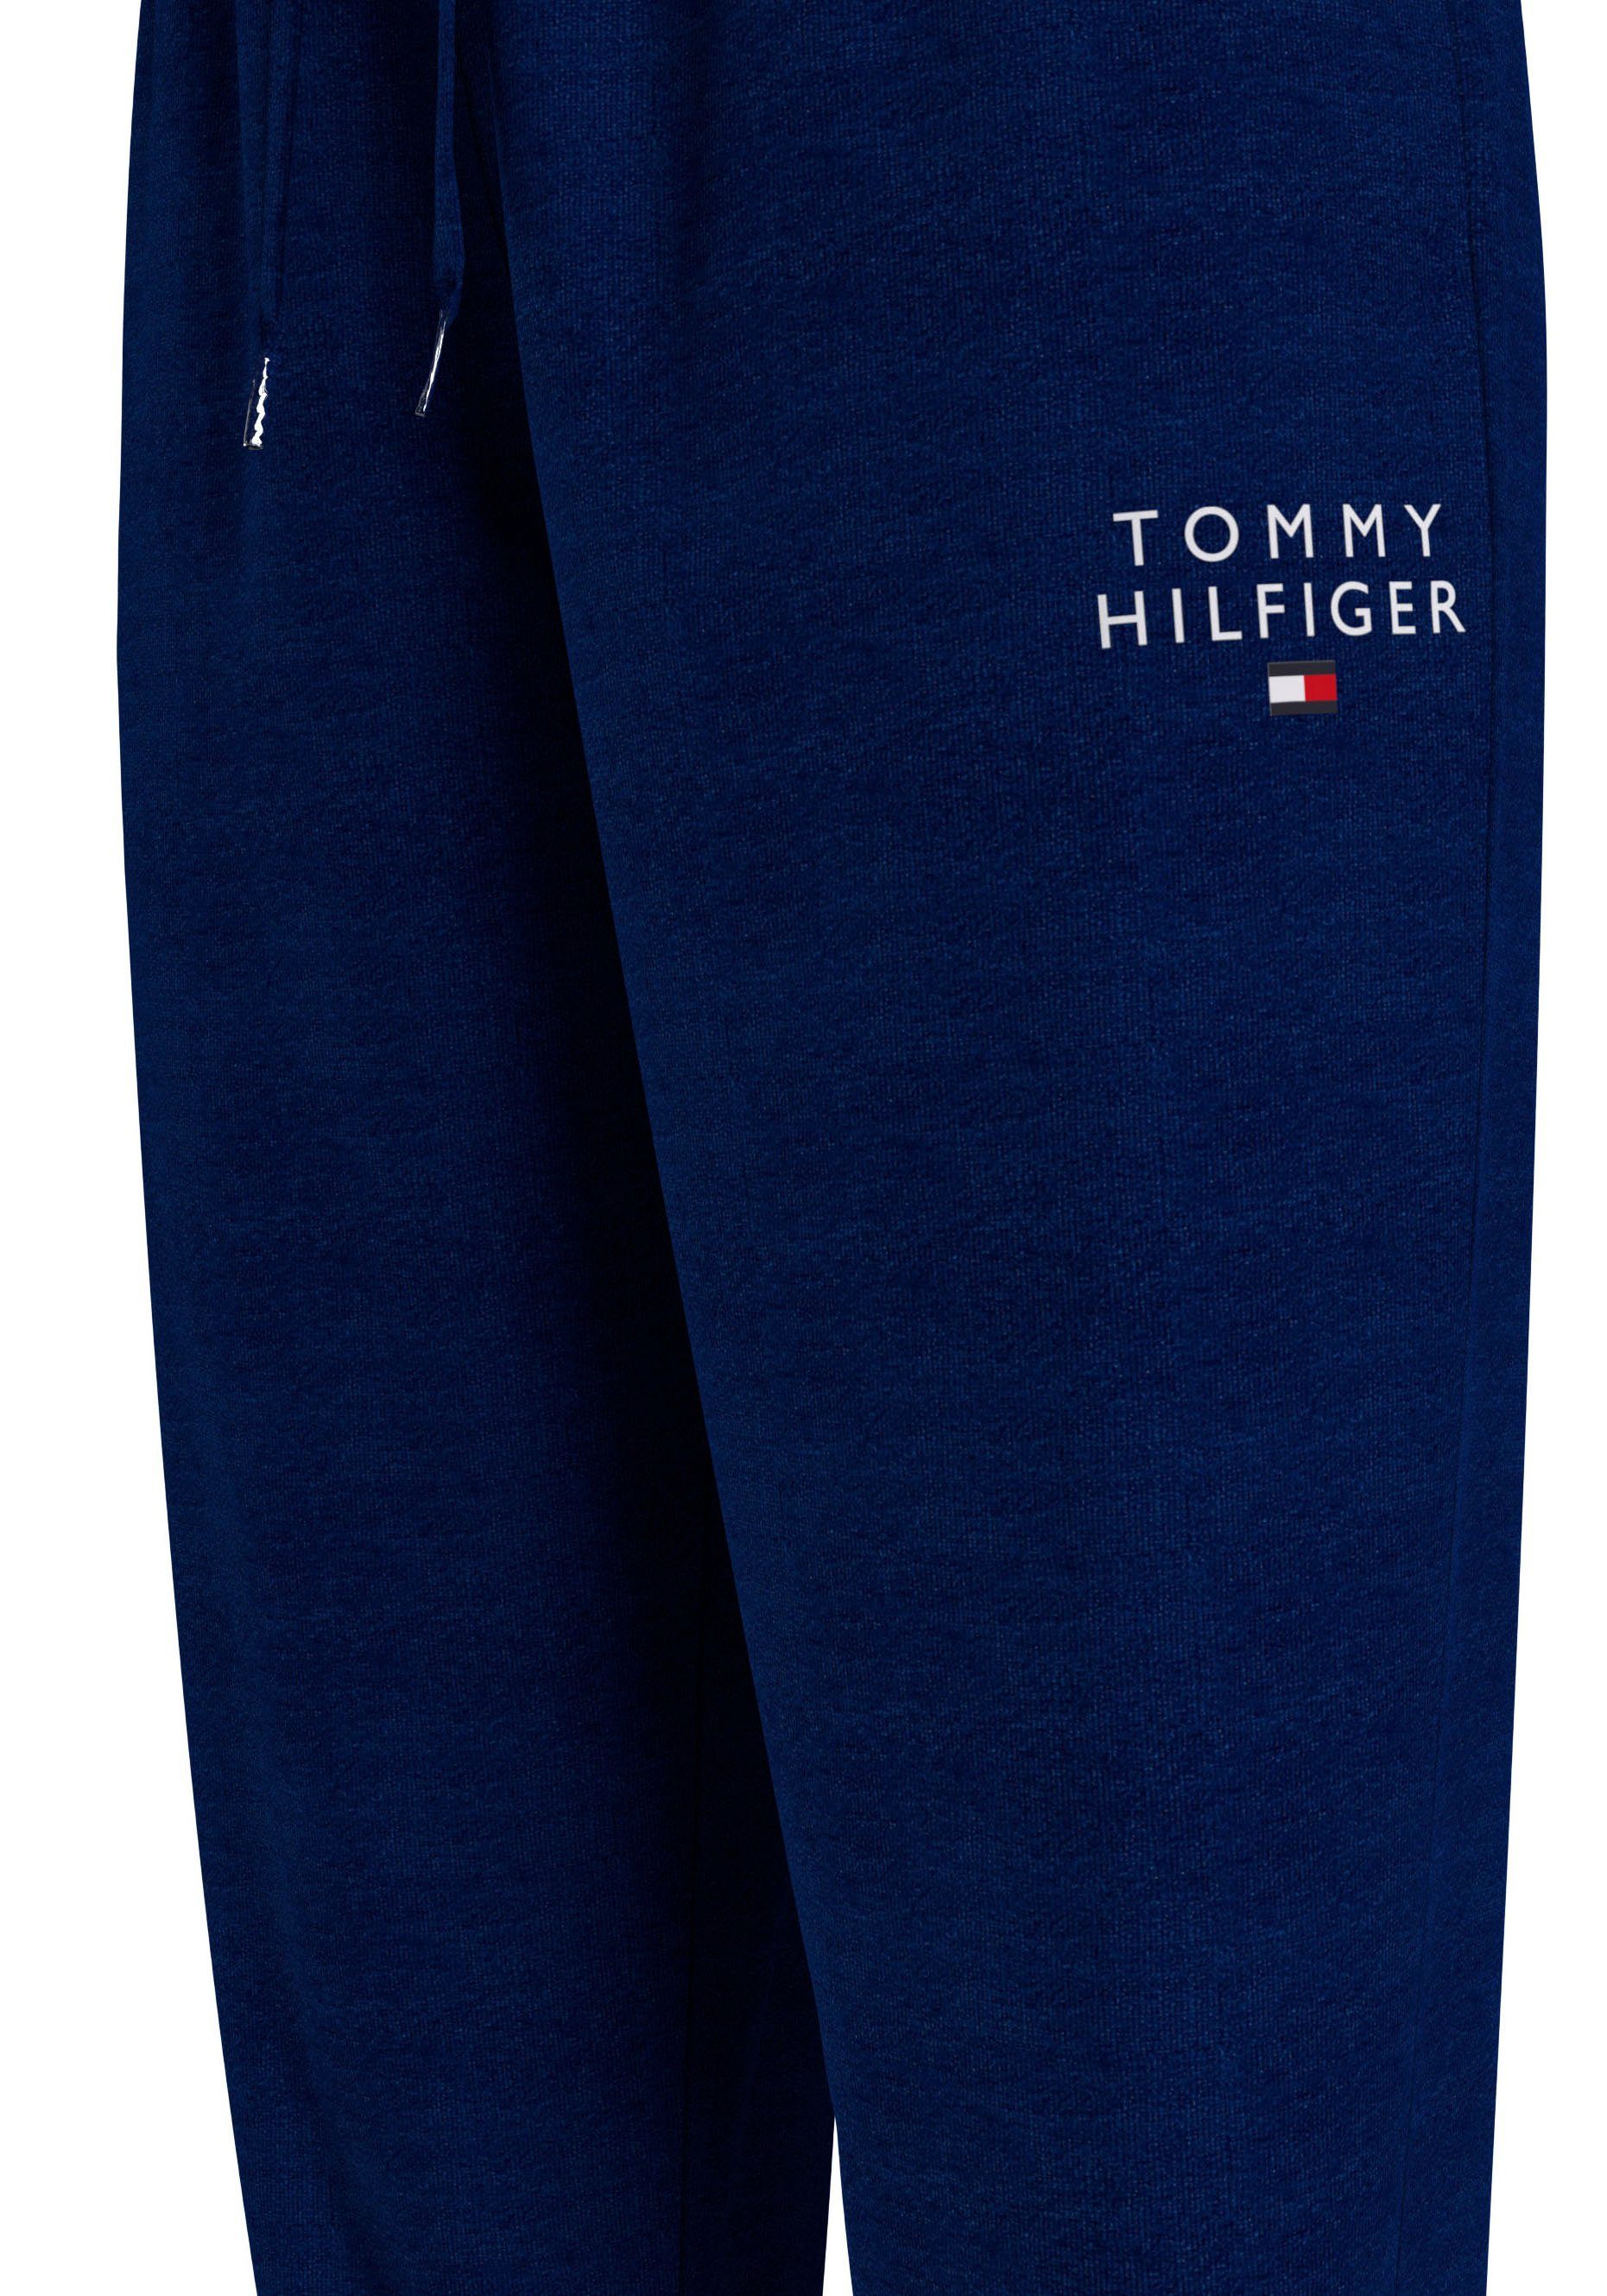 Sweathose Tommy Underwear Hilfiger Tommy mit PANTS Markenlogo-Aufdruck Hilfiger TRACK